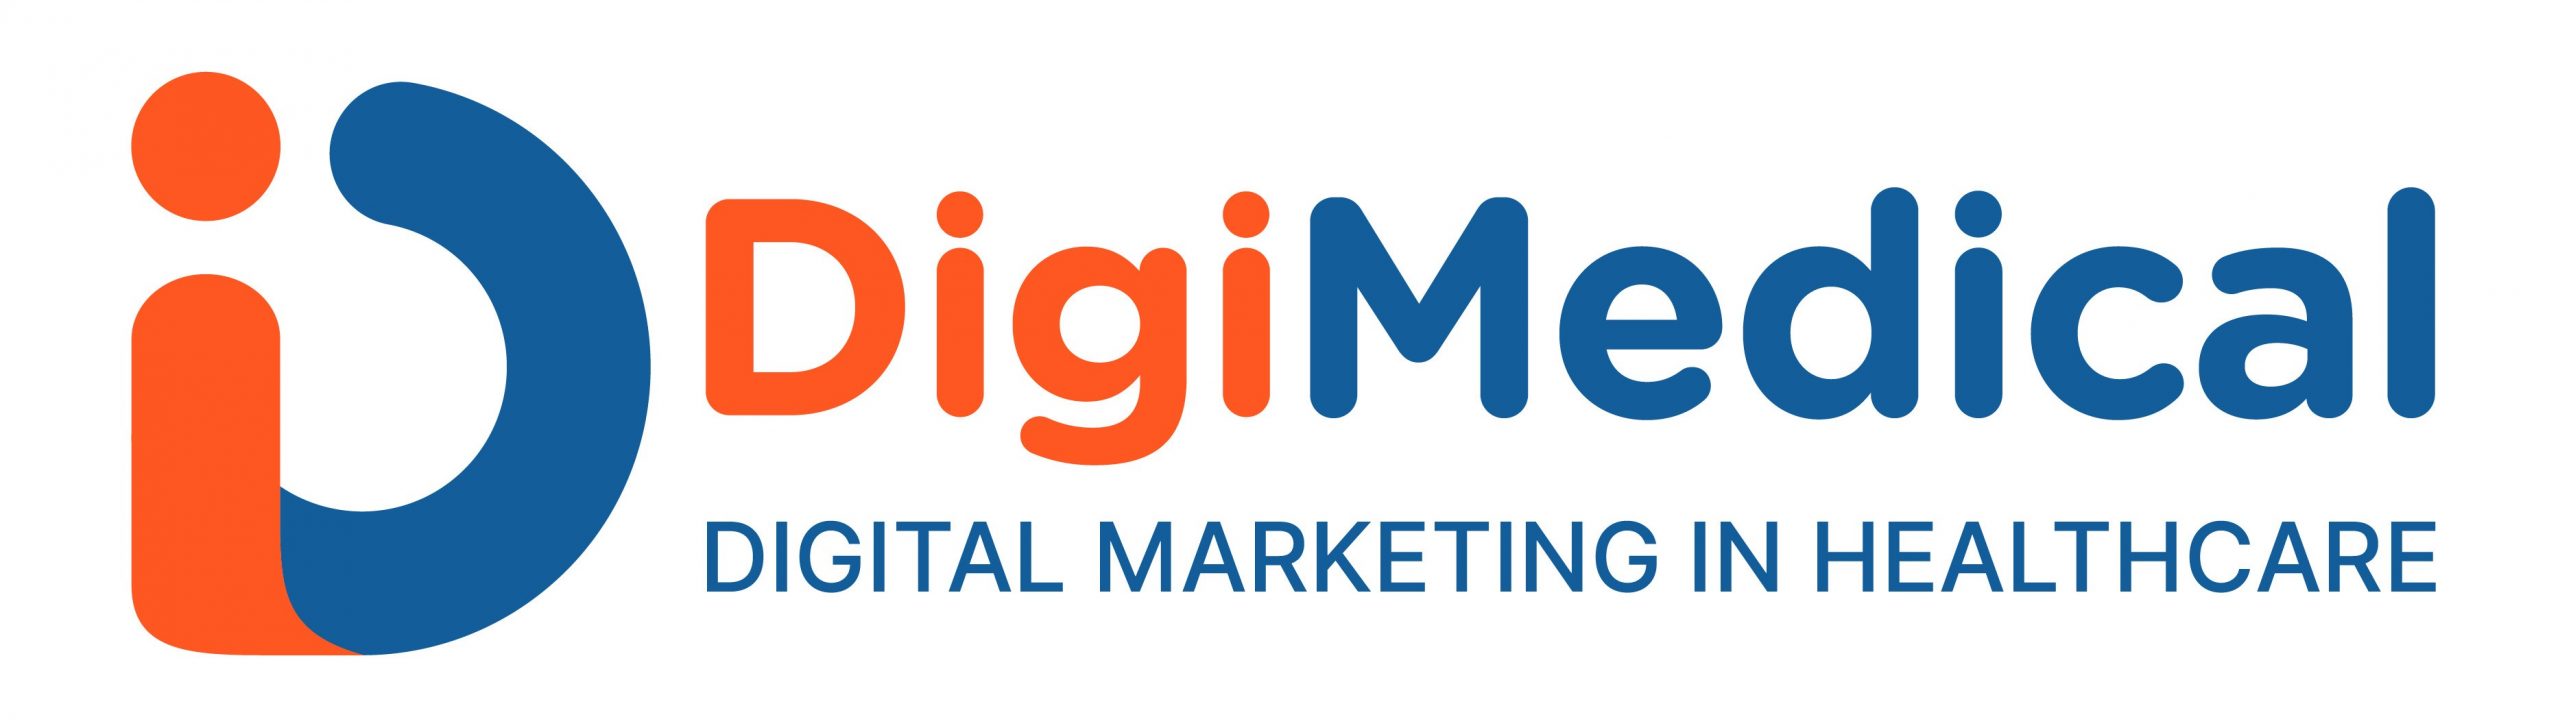 DigiMedical - Quản trị Vận hành và Marketing Phòng khám